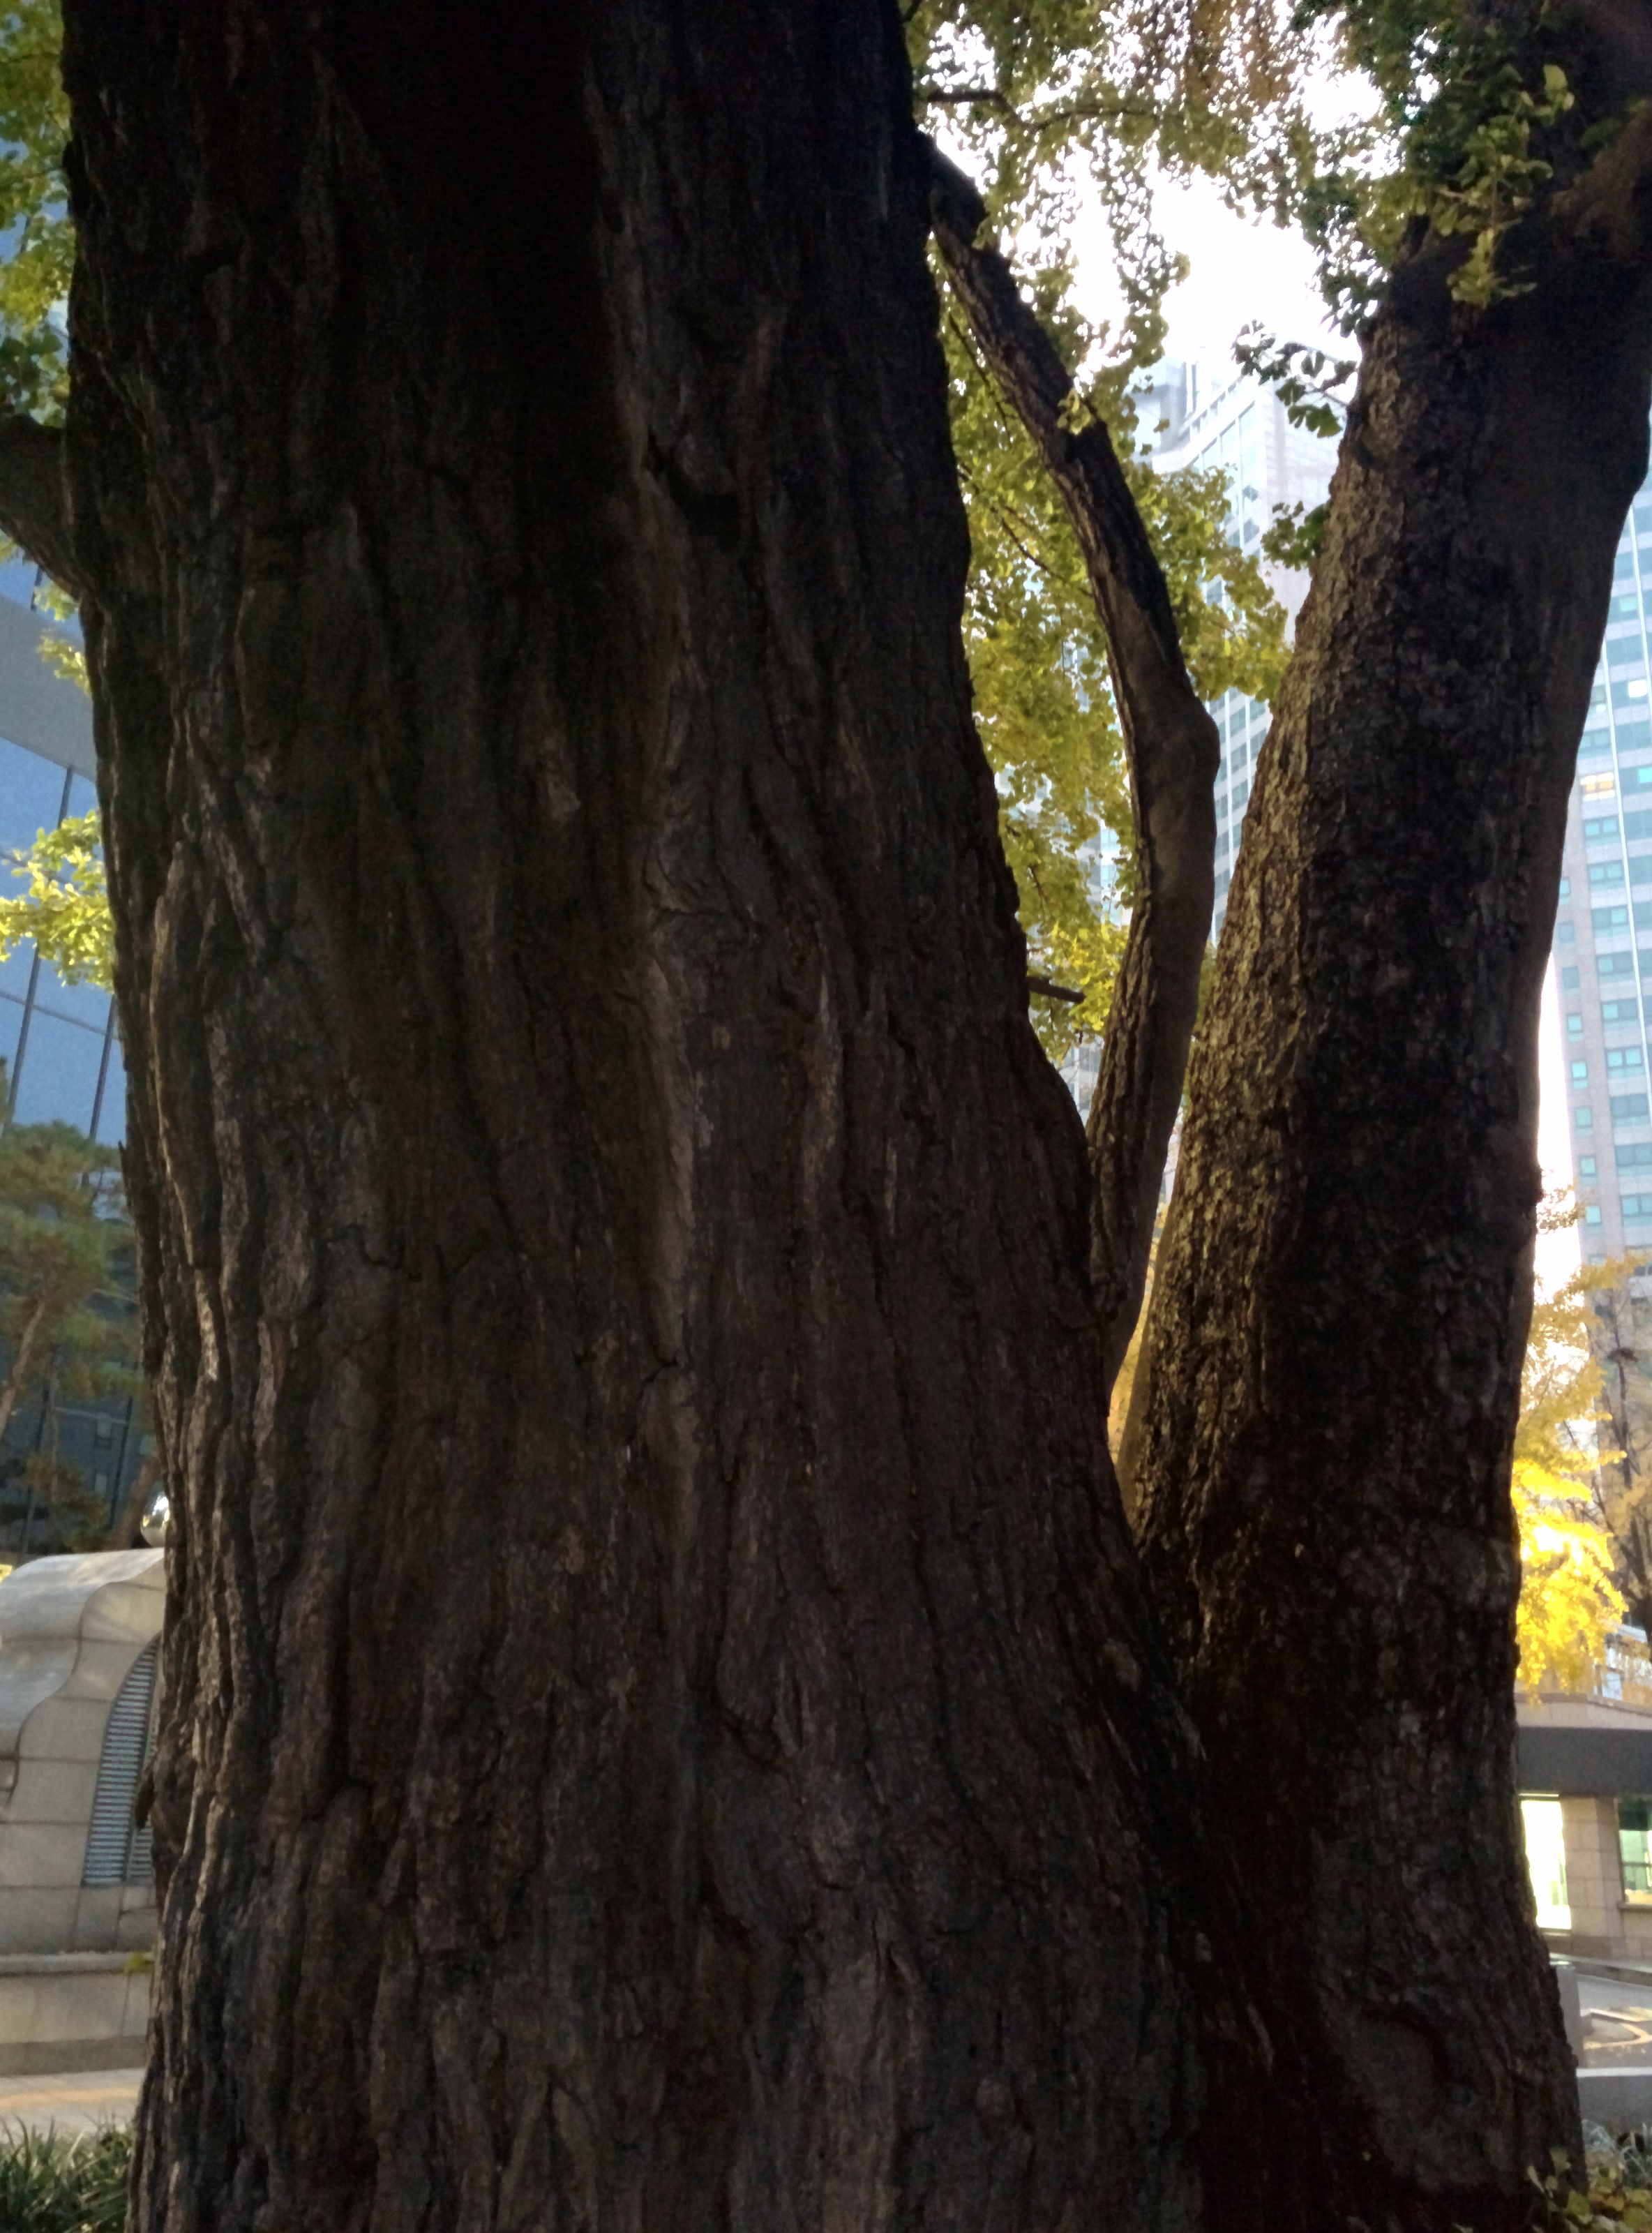 IMG_20151110_065014.jpg 서울의 500년 묵은 은행나무 노거수